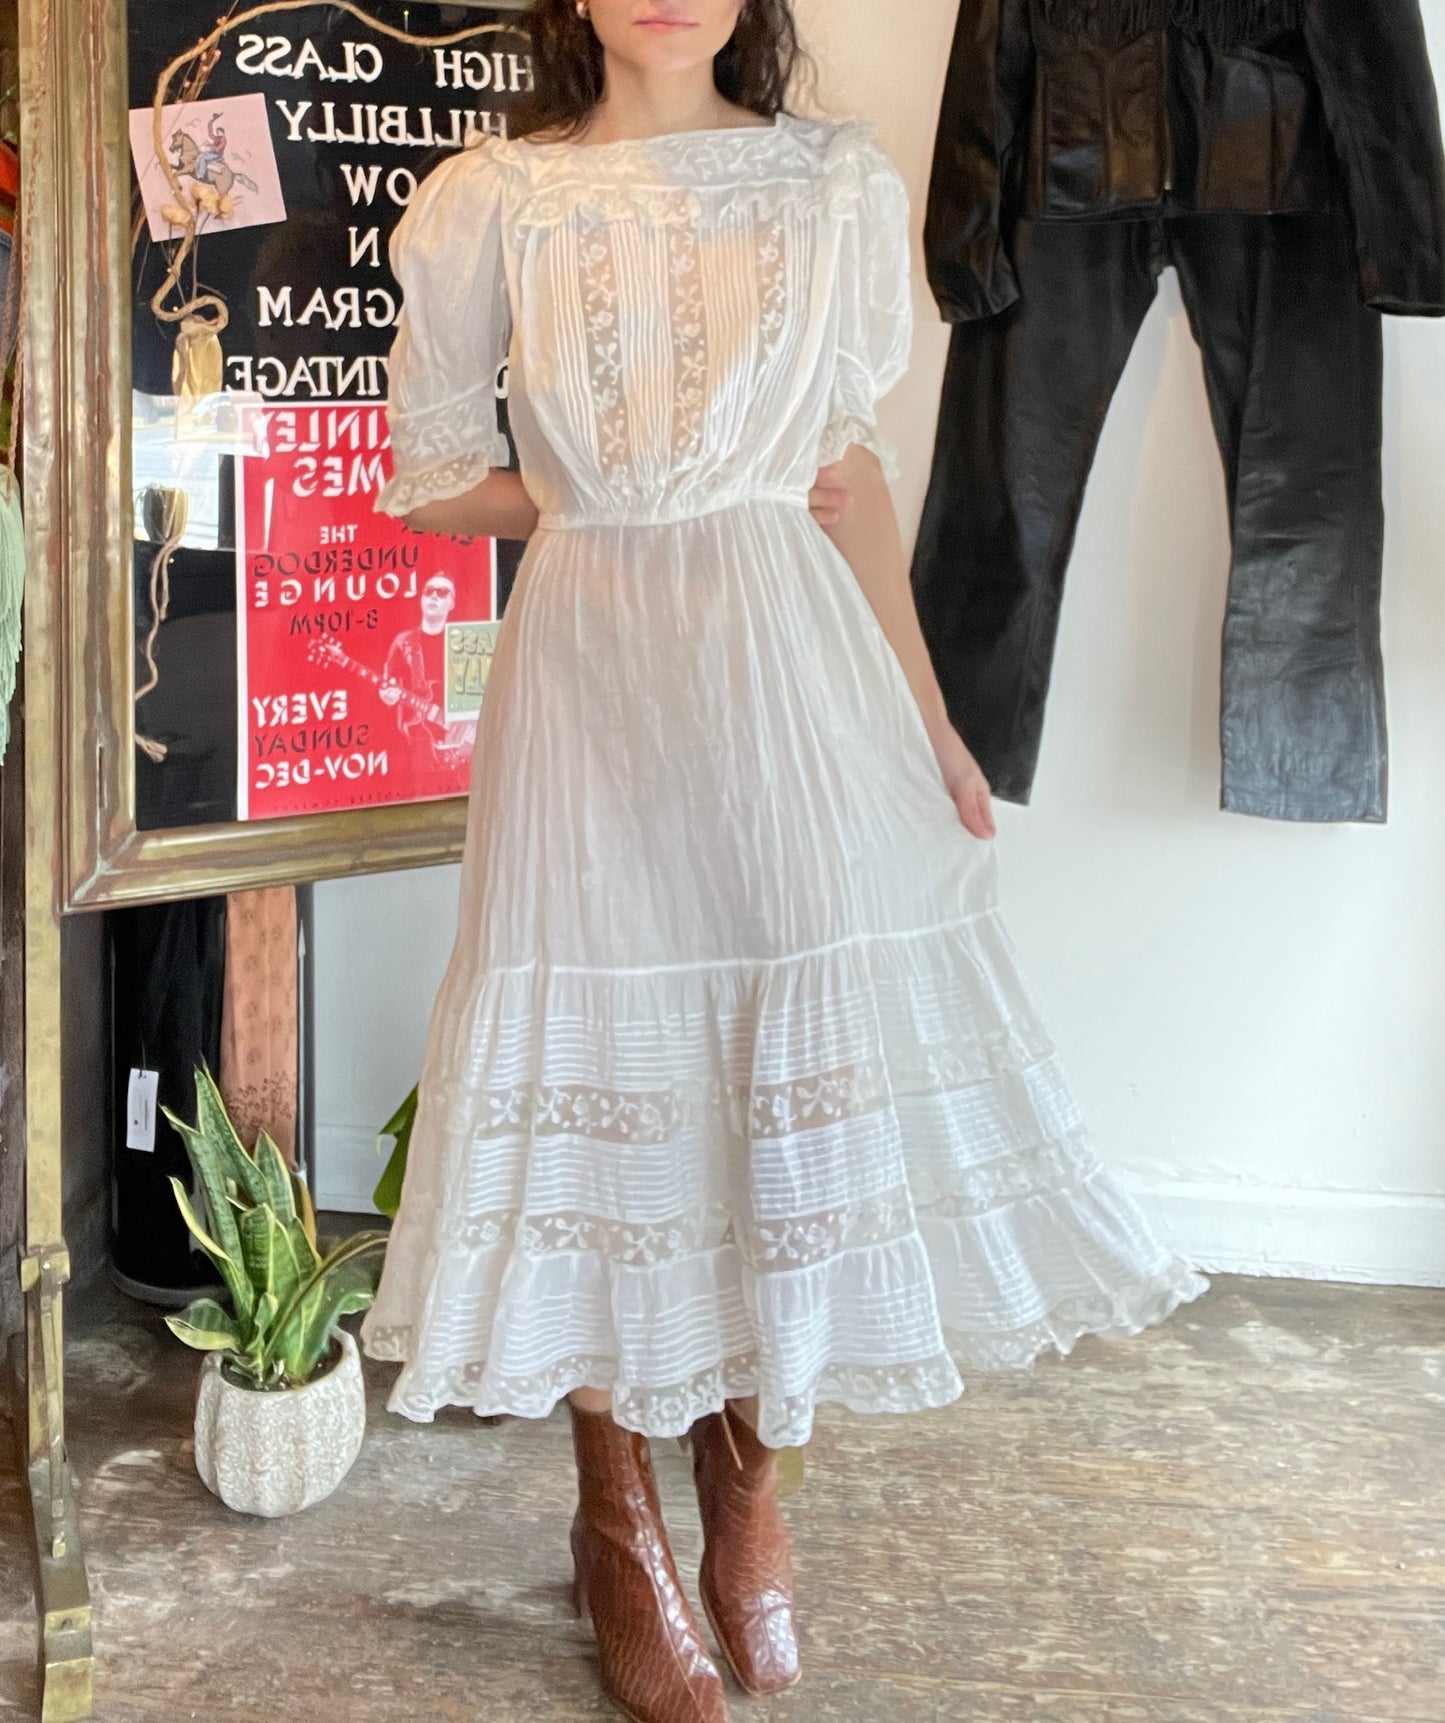 White Lace Edwardian Lawn Dress (XS)